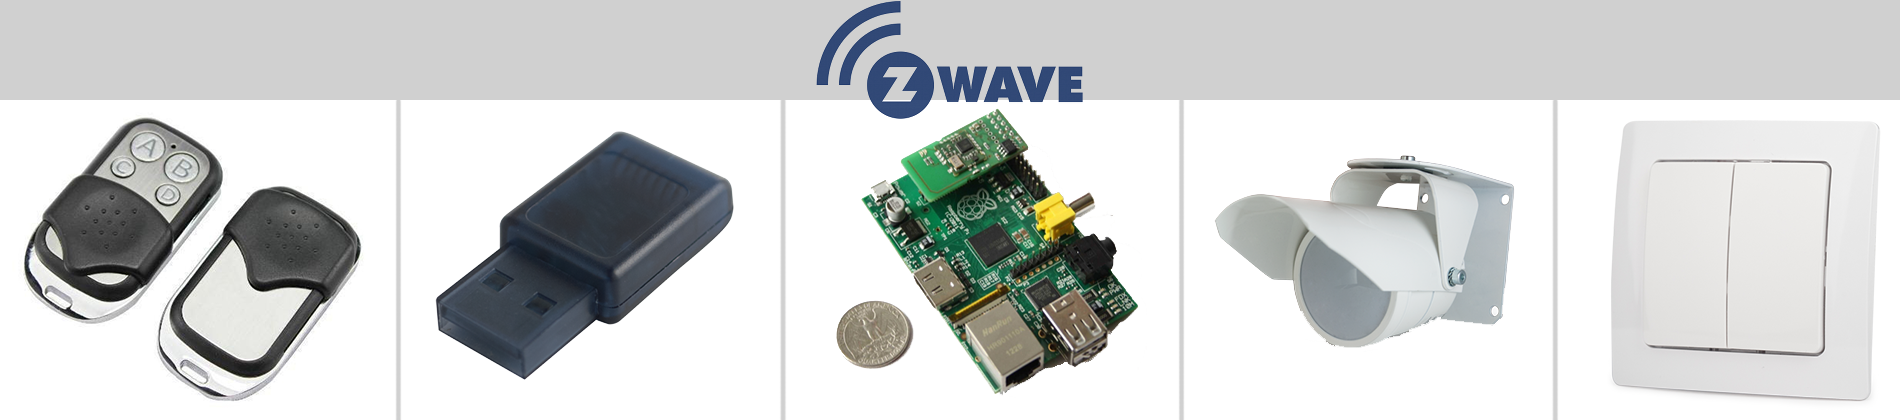 Z-Wave: надёжный протокол беспроводной связи для умных домов - 1